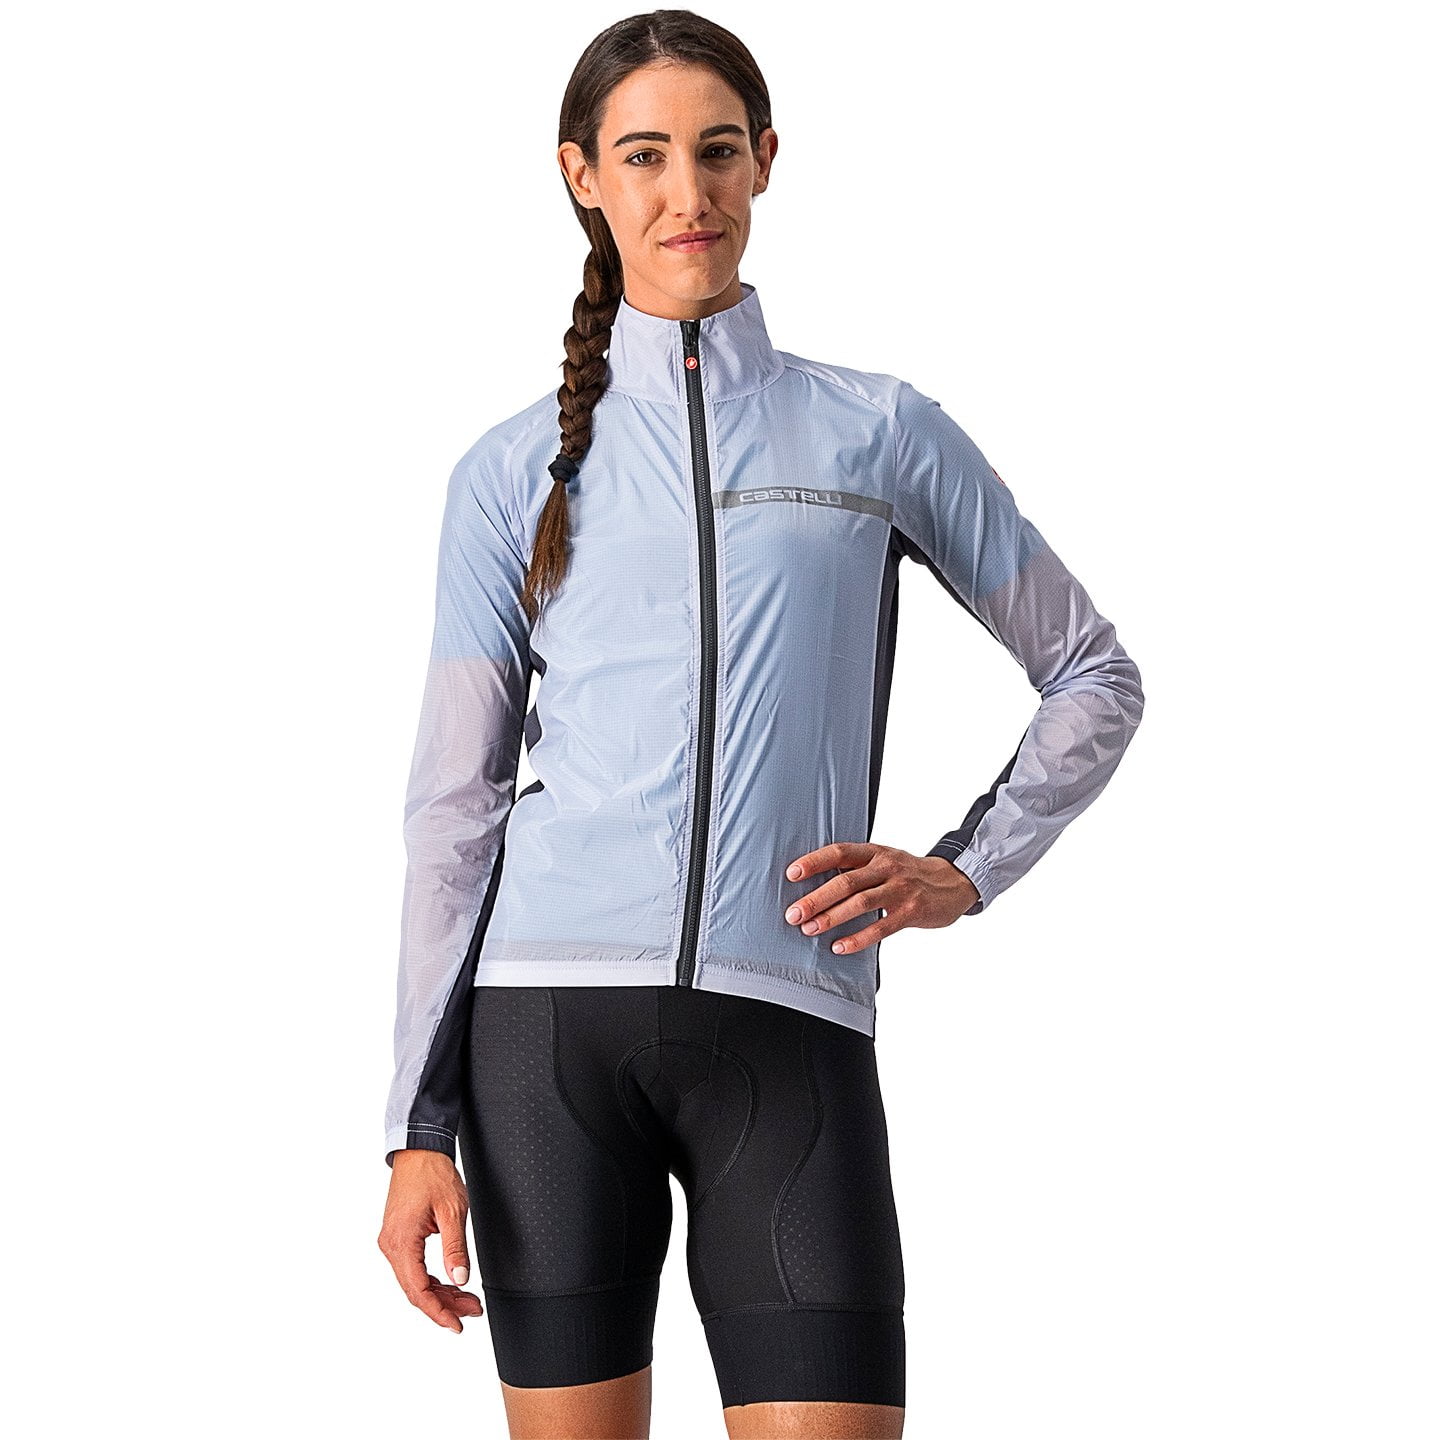 Squadra Women’s Wind Jacket Women’s Wind Jacket, size S, Cycle jacket, Cycle clothing